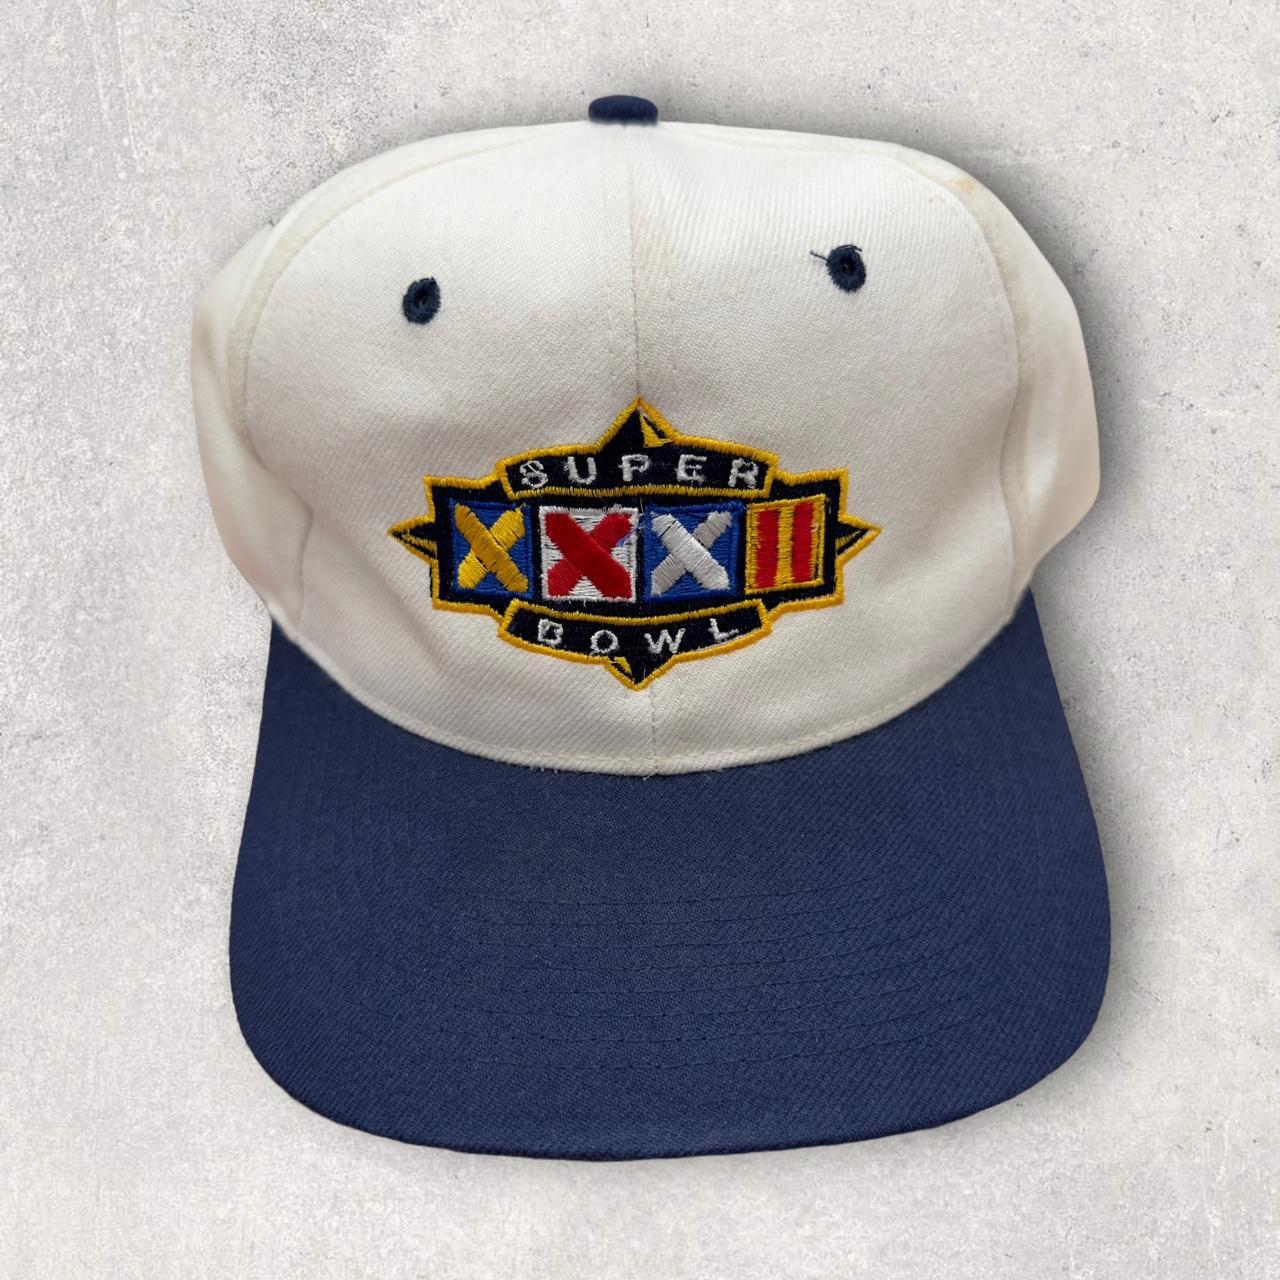 Vintage Starter Super Bowl XXXII snapback hat in...